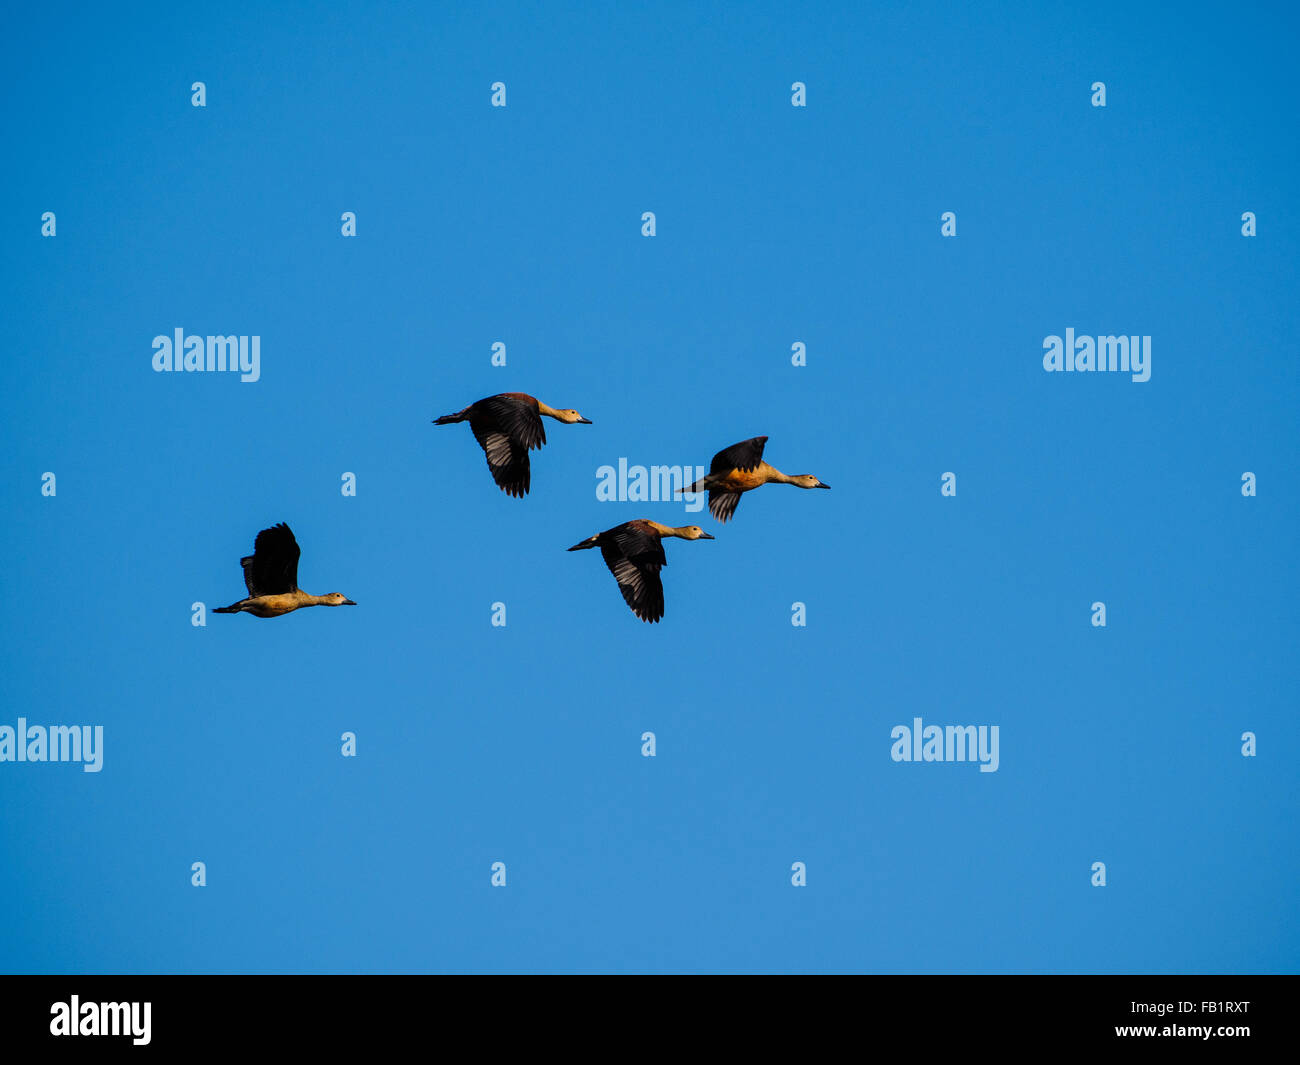 Ruddy Shelduck flying over Indawgyi Lake Stock Photo